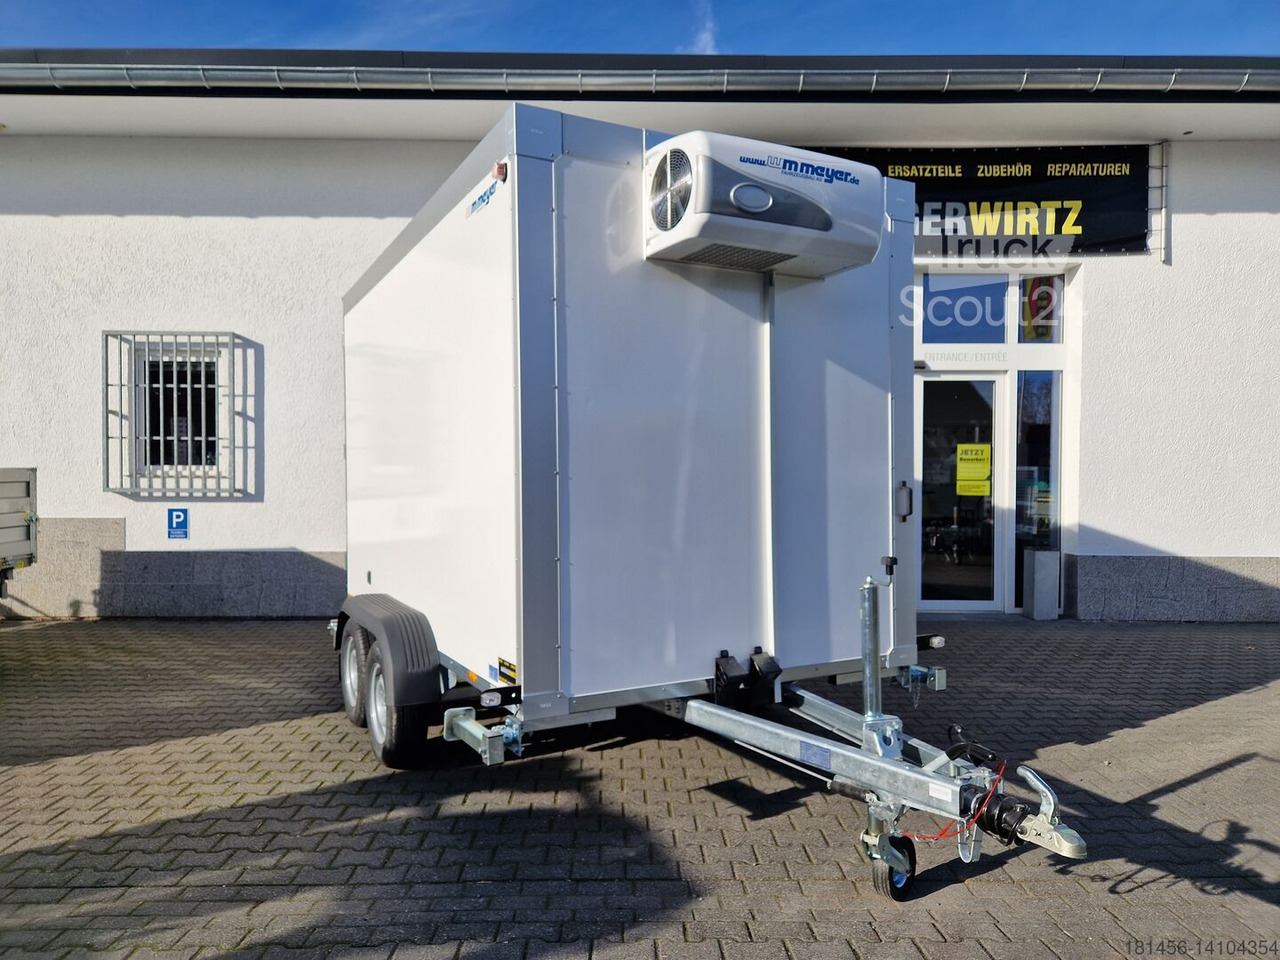 New Refrigerator trailer Wm Meyer Tiefkühlanhänger direkt verfügbar AZK 2734/180 336x170x200cm 100 isolierung Govi 230V Kühlung: picture 2